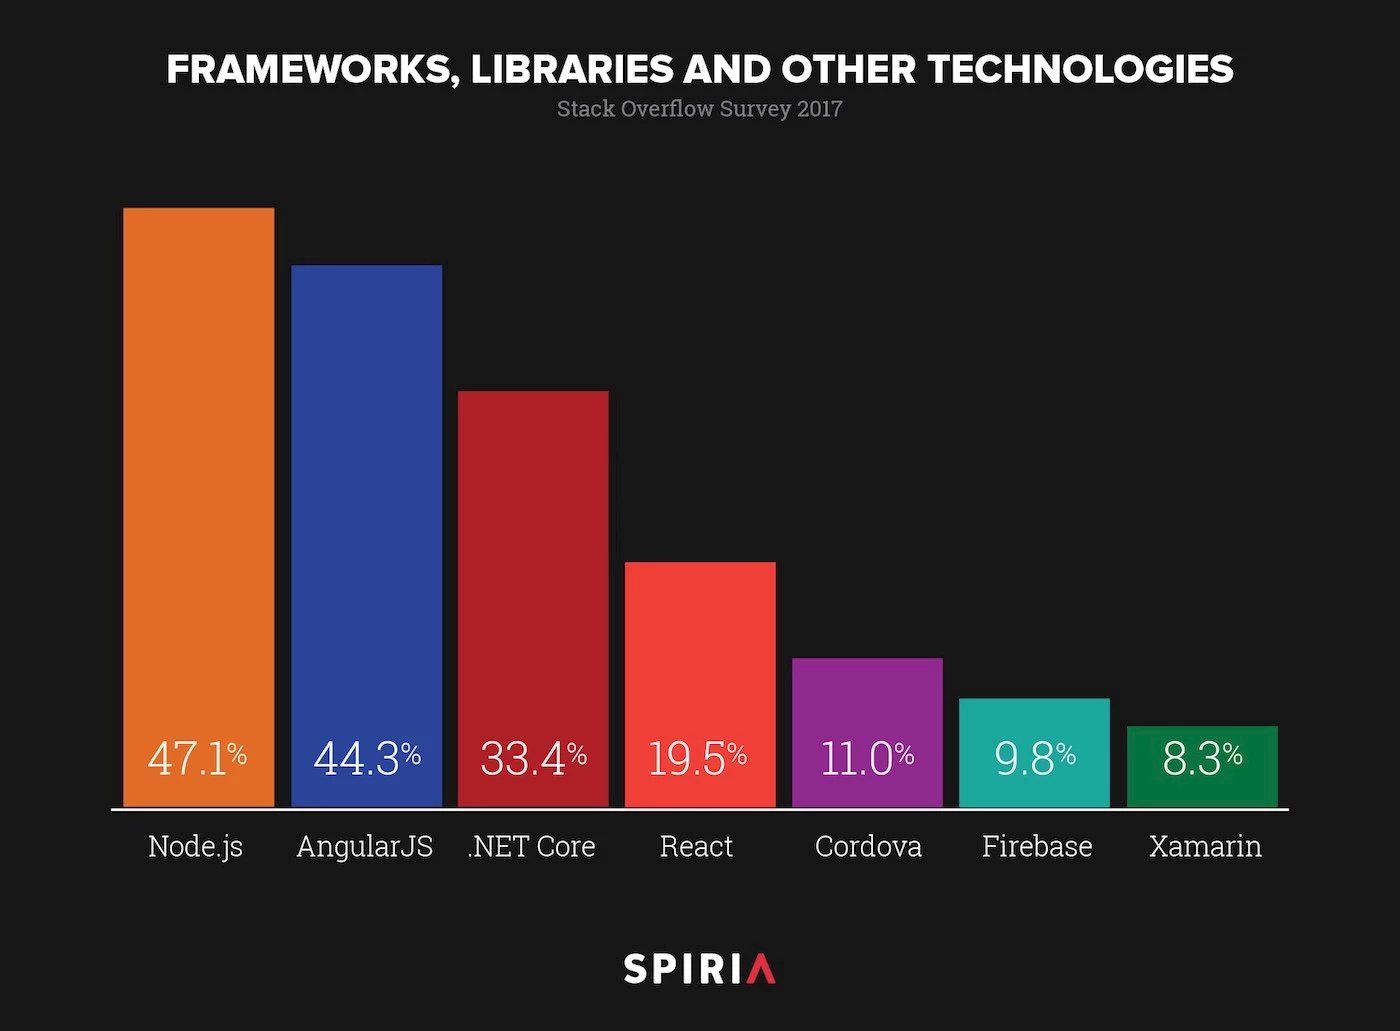 Most Loved Frameworks, 2017